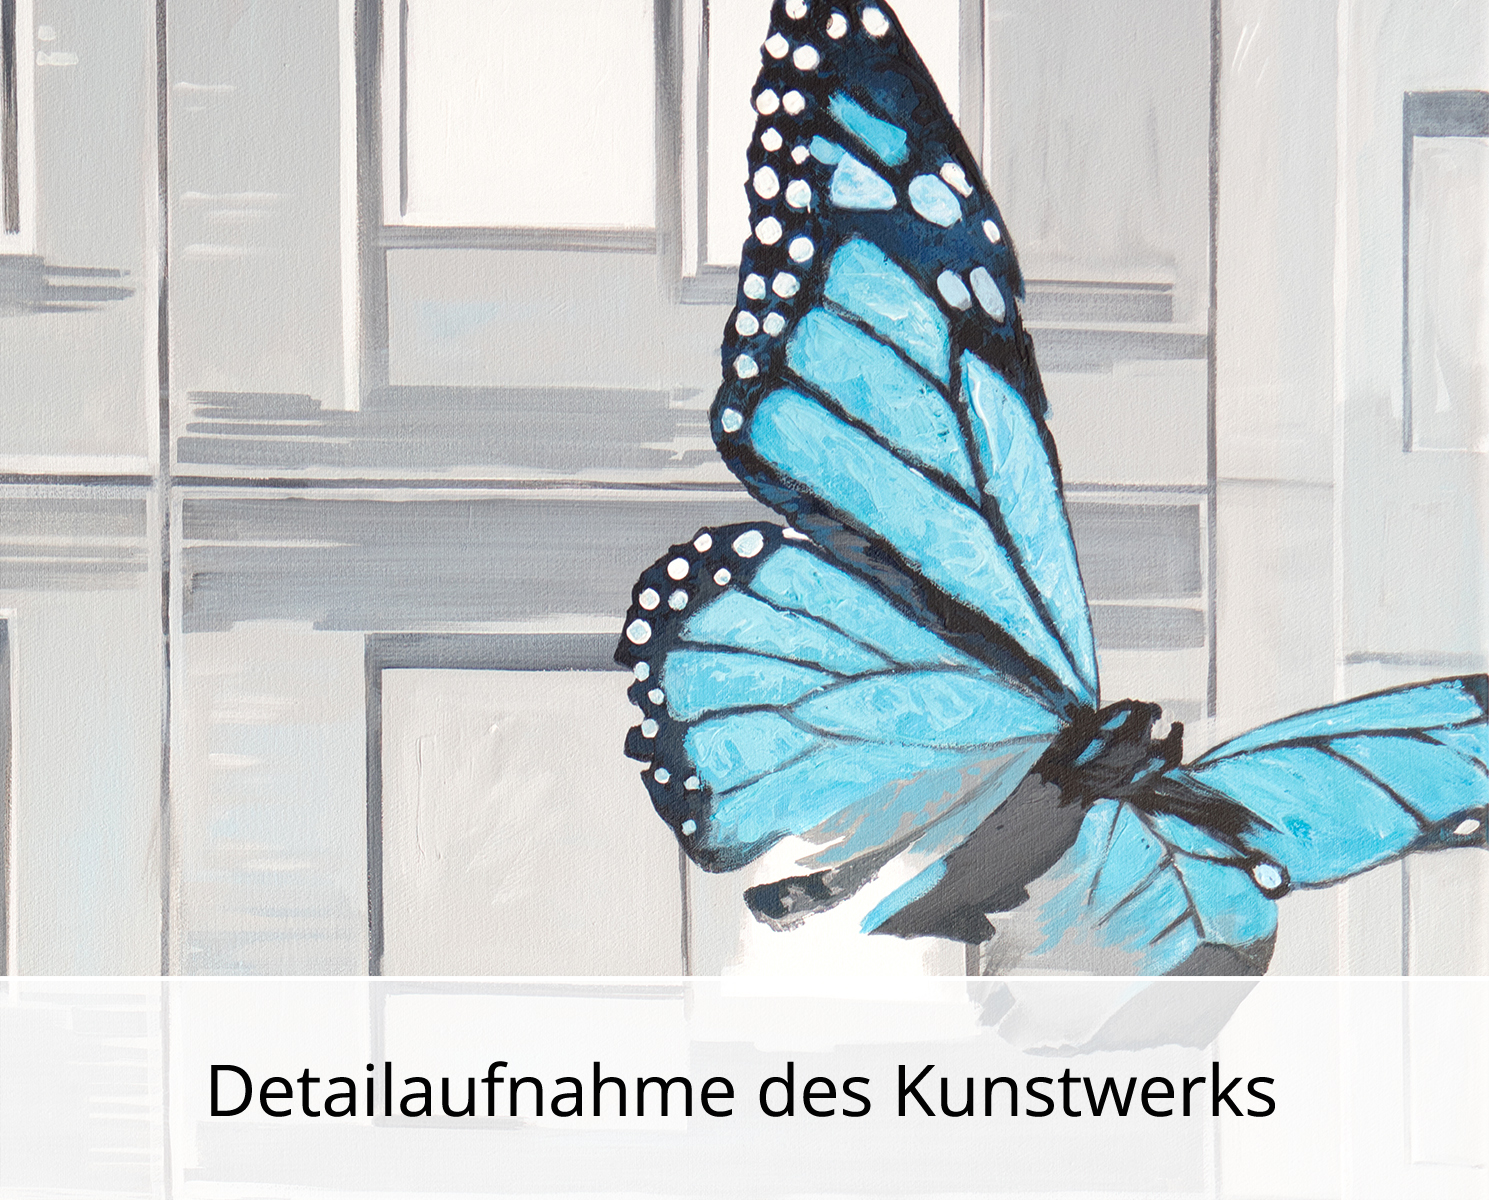 U. Fehrmann: "Lepidoptera (Metamorphose), Schmetterlinge", Originalgemälde (Unikat)